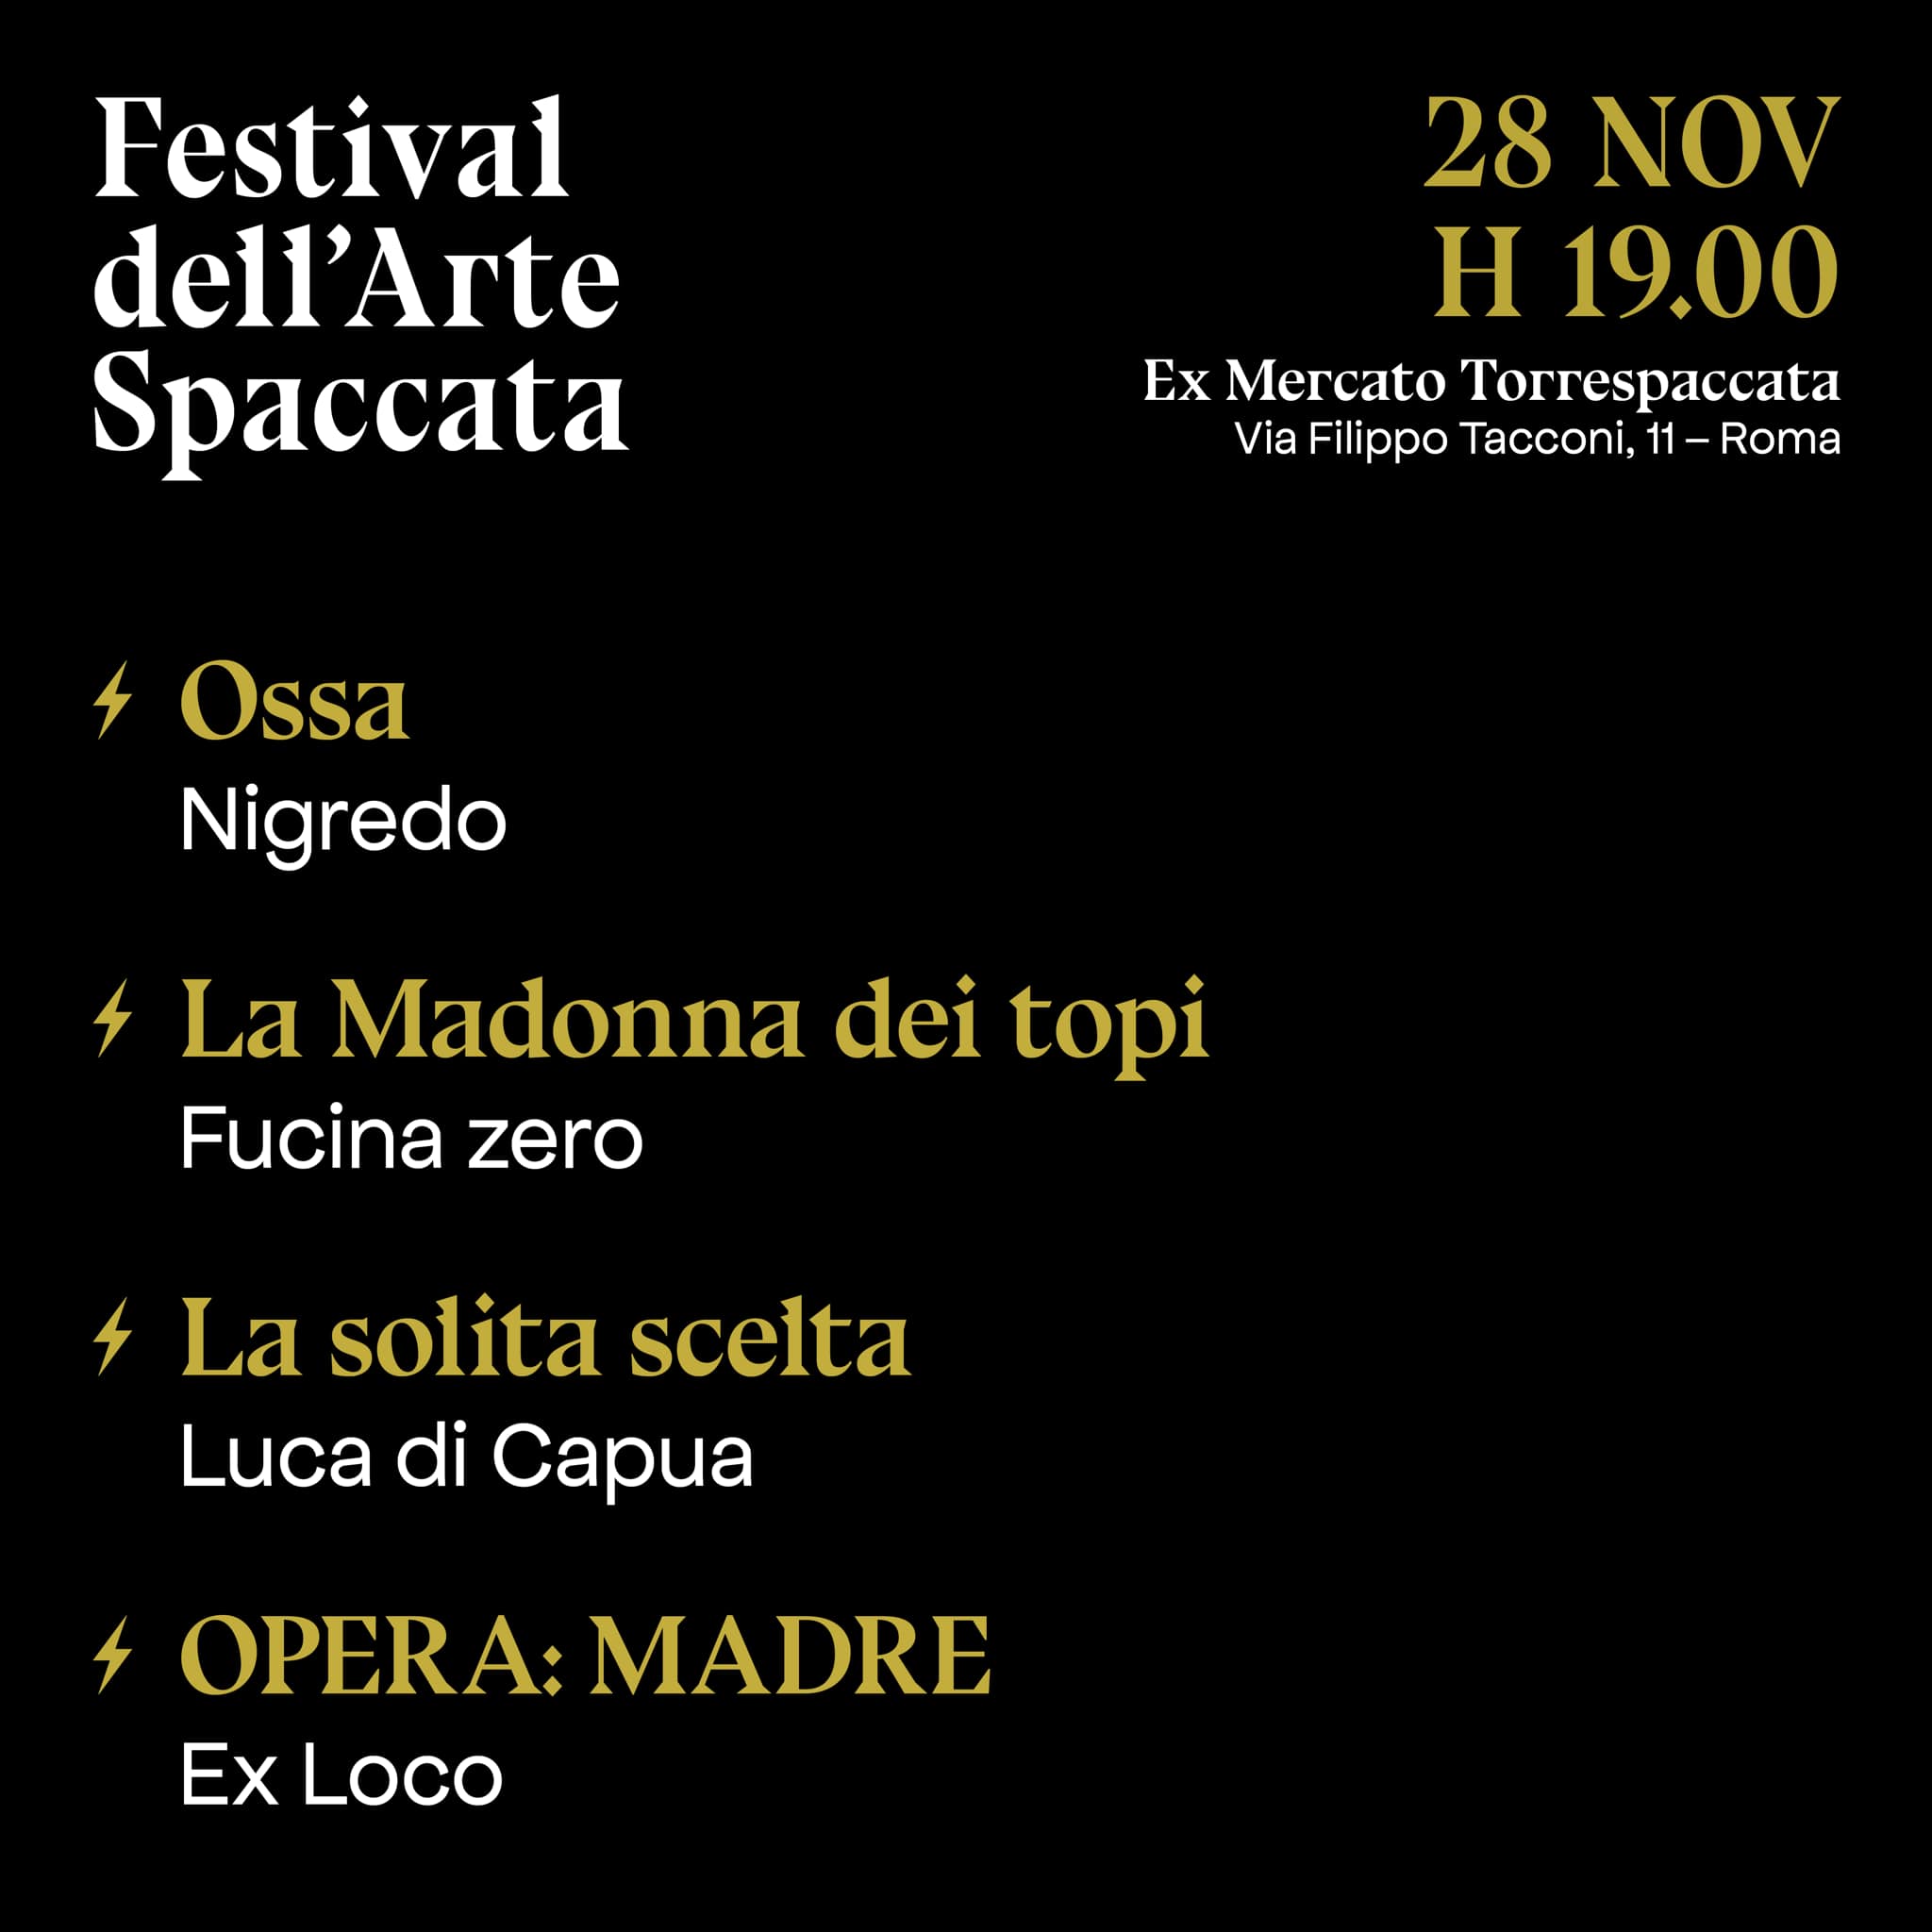 Festival dell'Arte Spaccata, Corti Teatrali, 28 novembre 2021